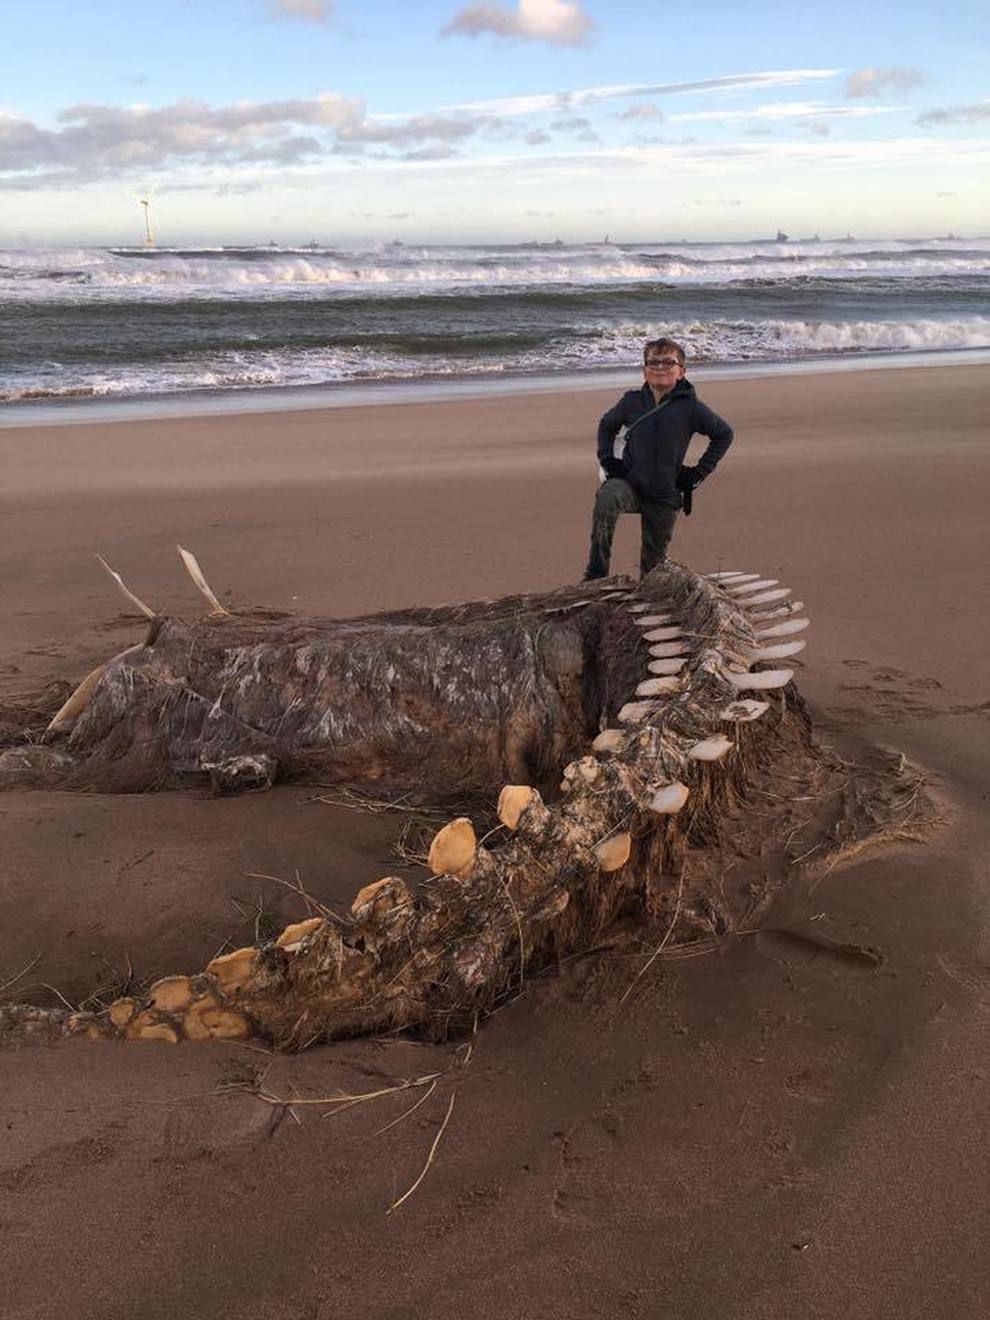 Гігантський скелет «Нессі» вимило на шотландському пляжі під час шторму Сіара. Дивовижна знахідка була зроблена в неділю, світ обговорює фотографію загадкової істоти.